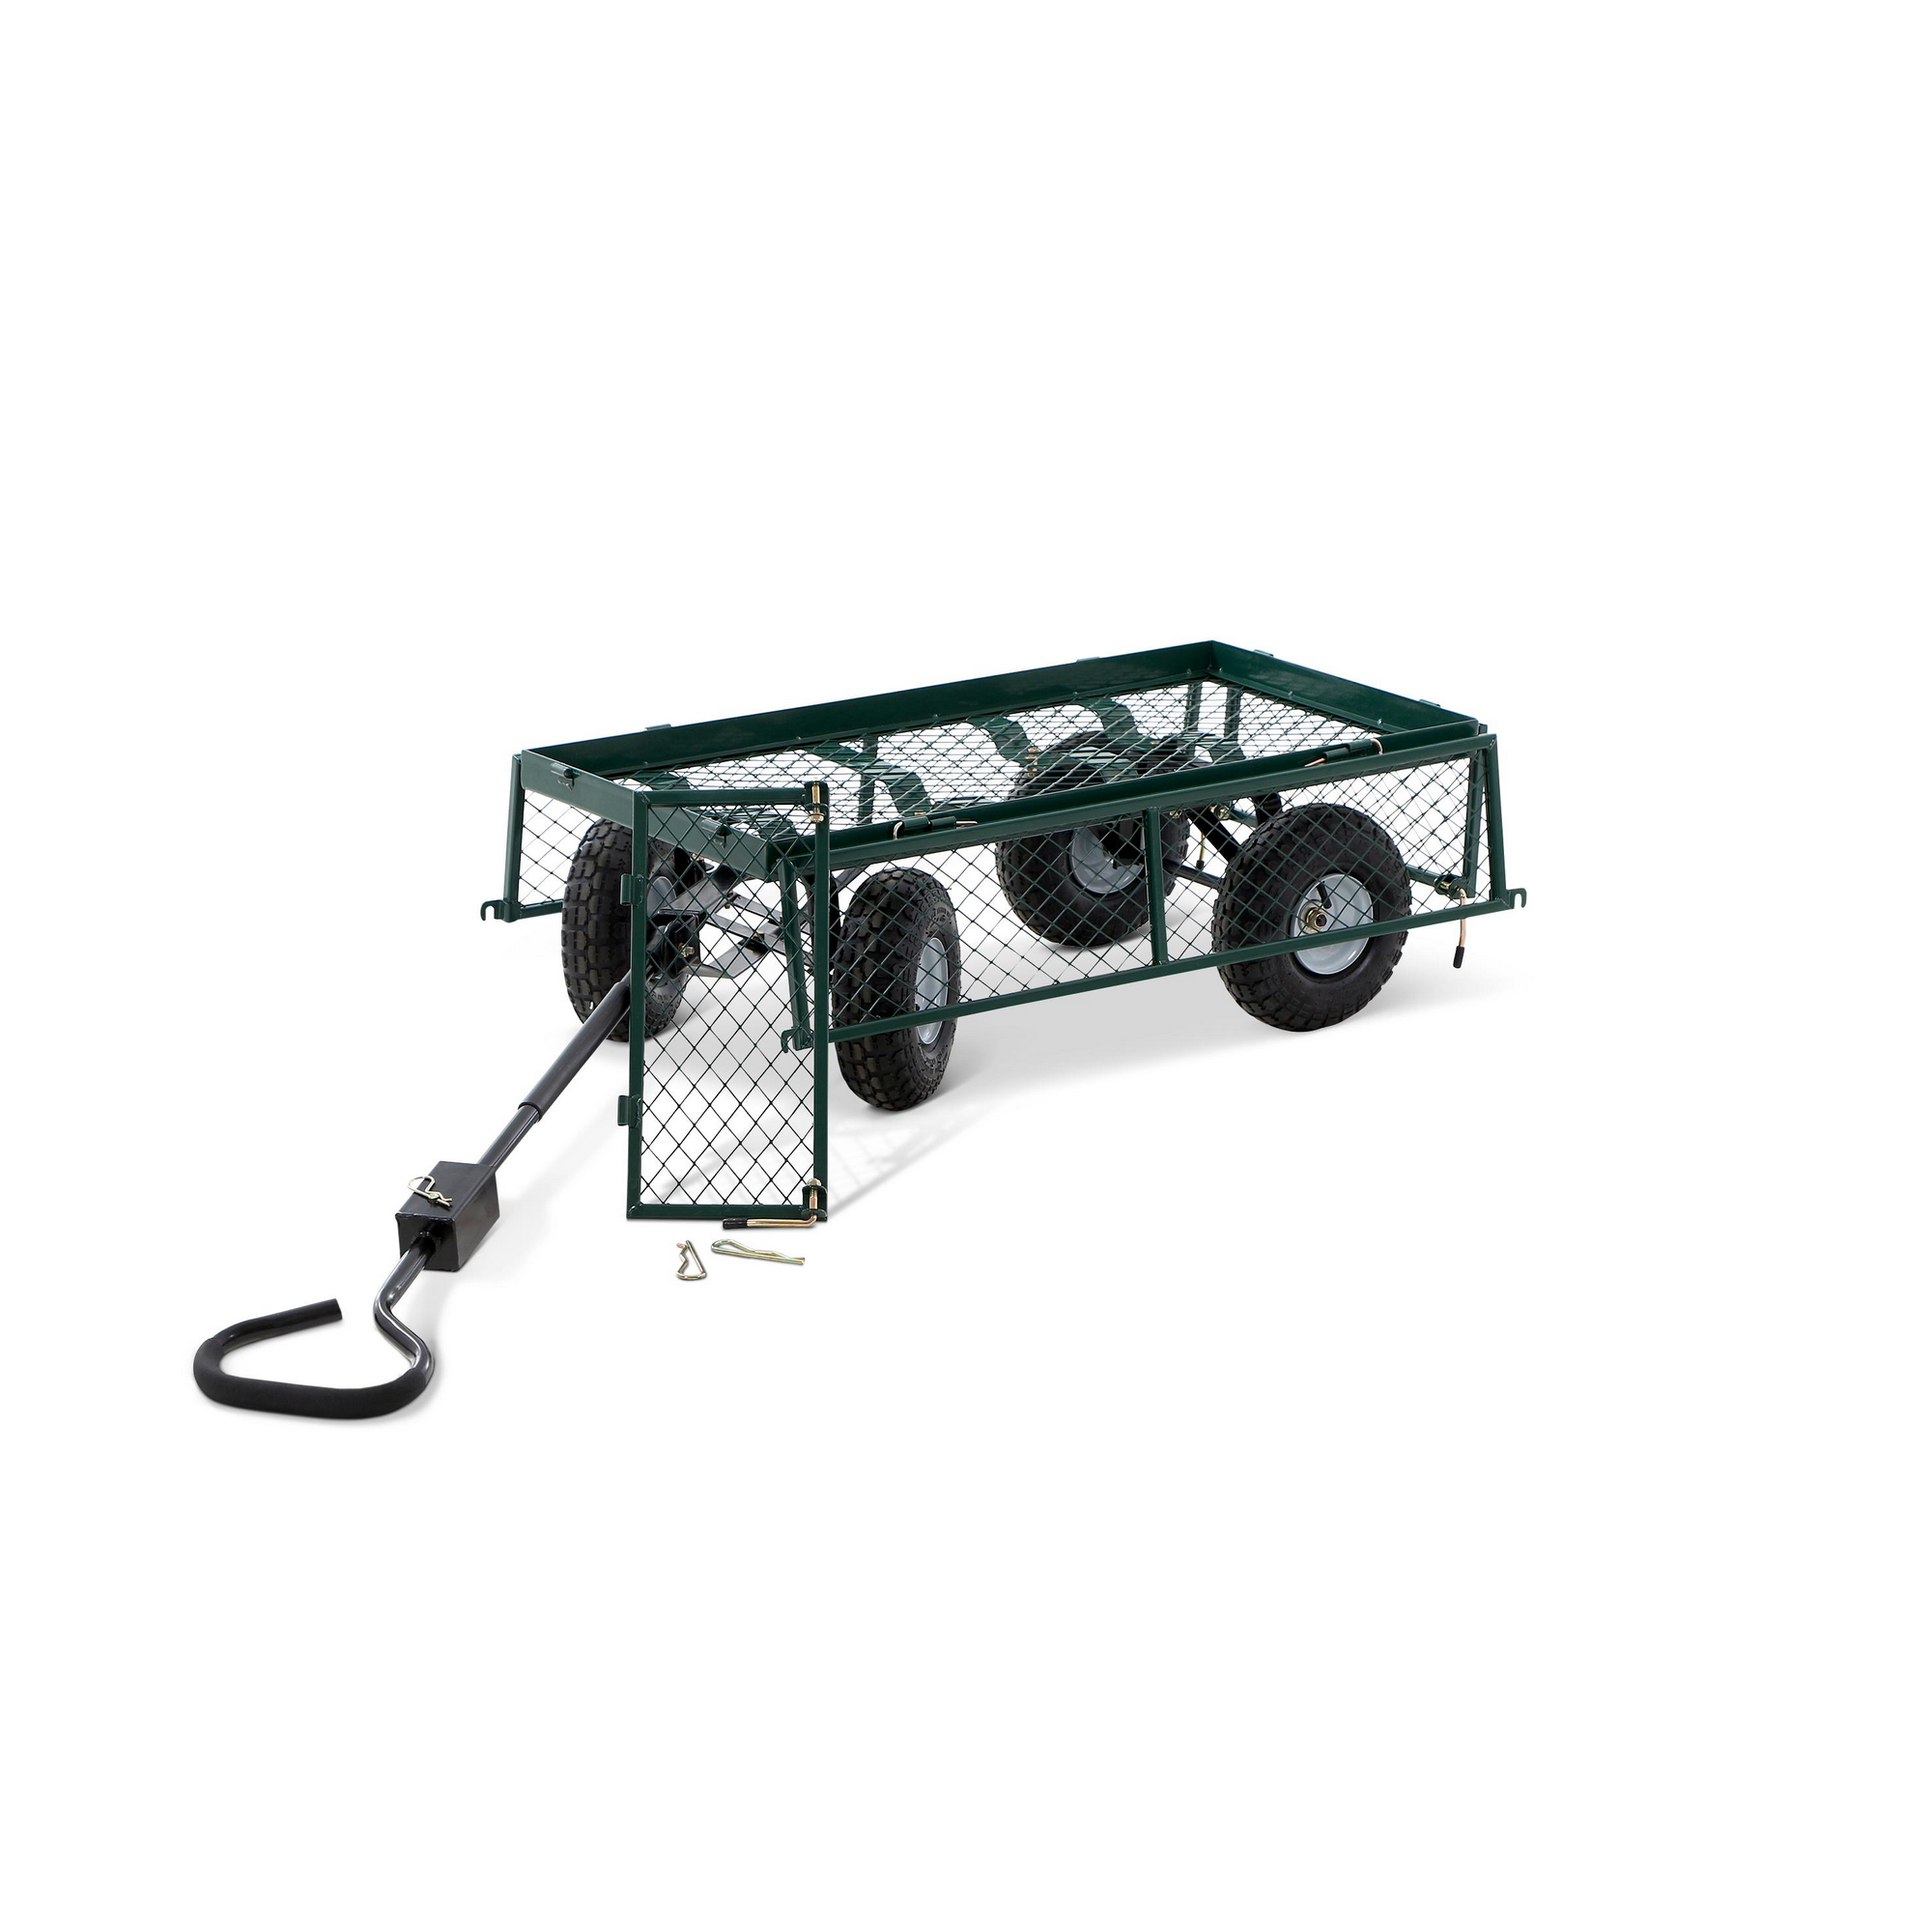 Gartenwagen mit Plane grün 50 x 79 x 89 cm + product picture